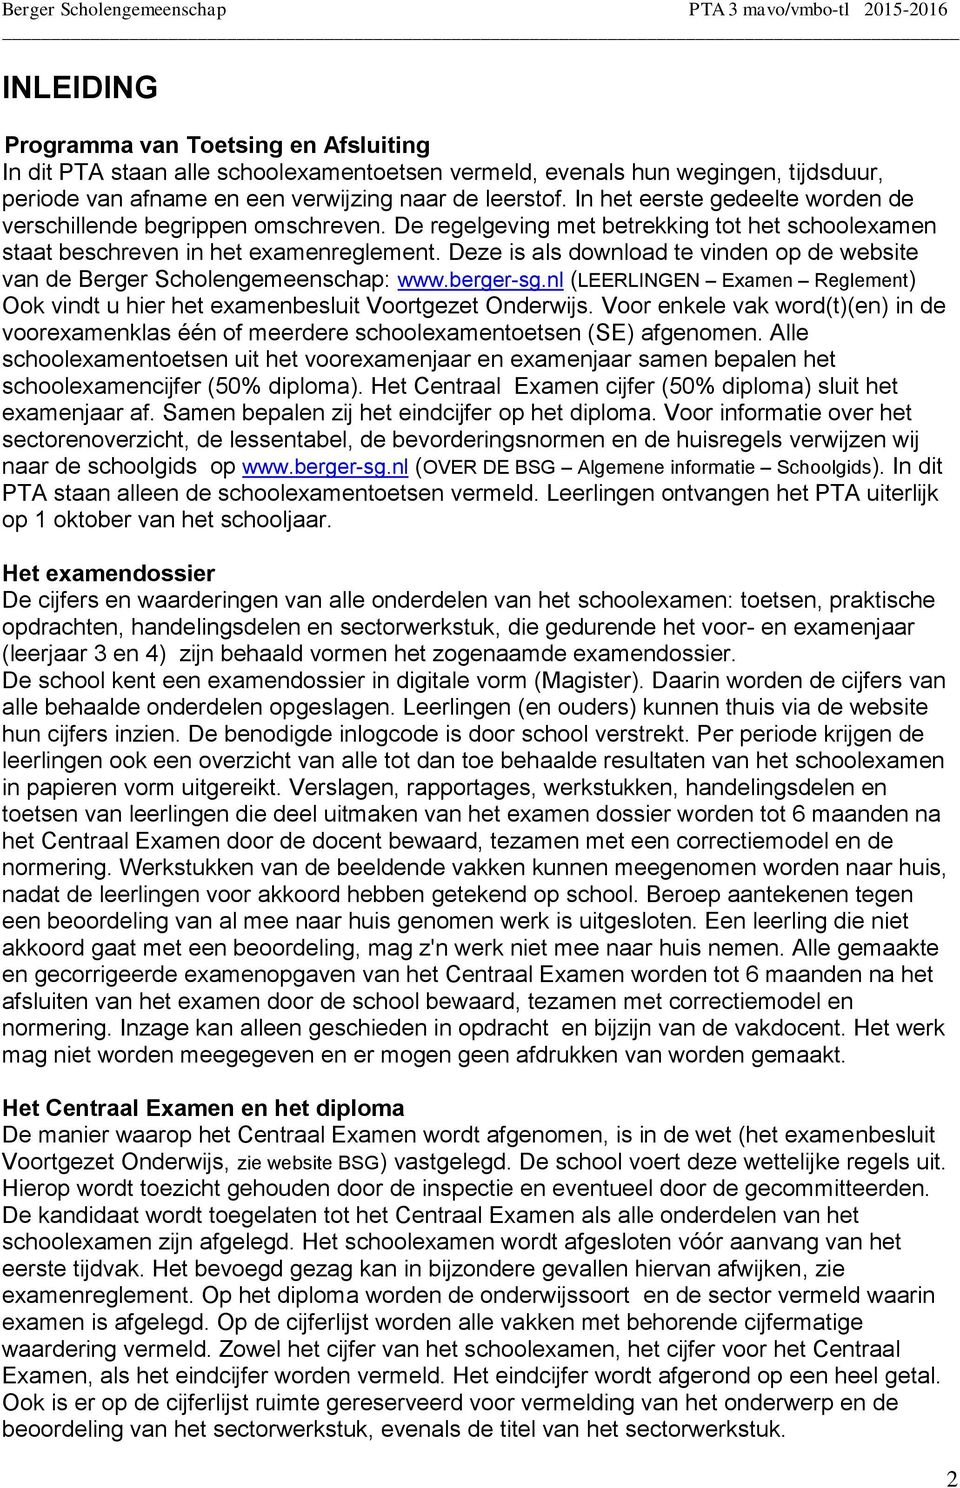 Deze is als download te vinden op de website van de Berger Scholengemeenschap: www.berger-sg.nl (LEERLINGEN Examen Reglement) Ook vindt u hier het examenbesluit Voortgezet Onderwijs.